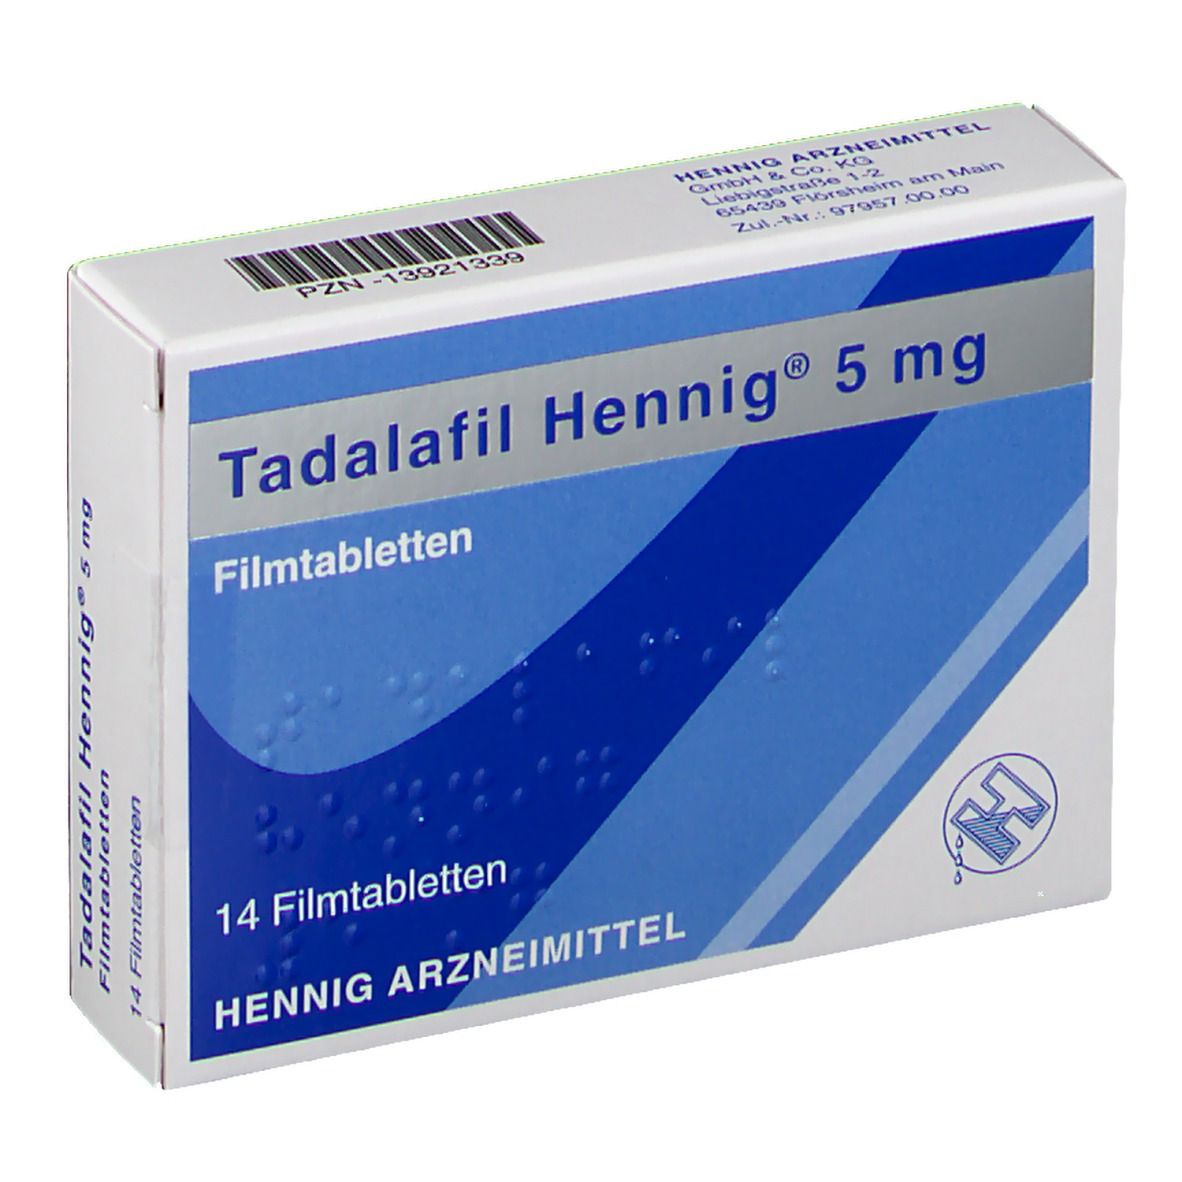 Tadalafil Hennig® 5 mg